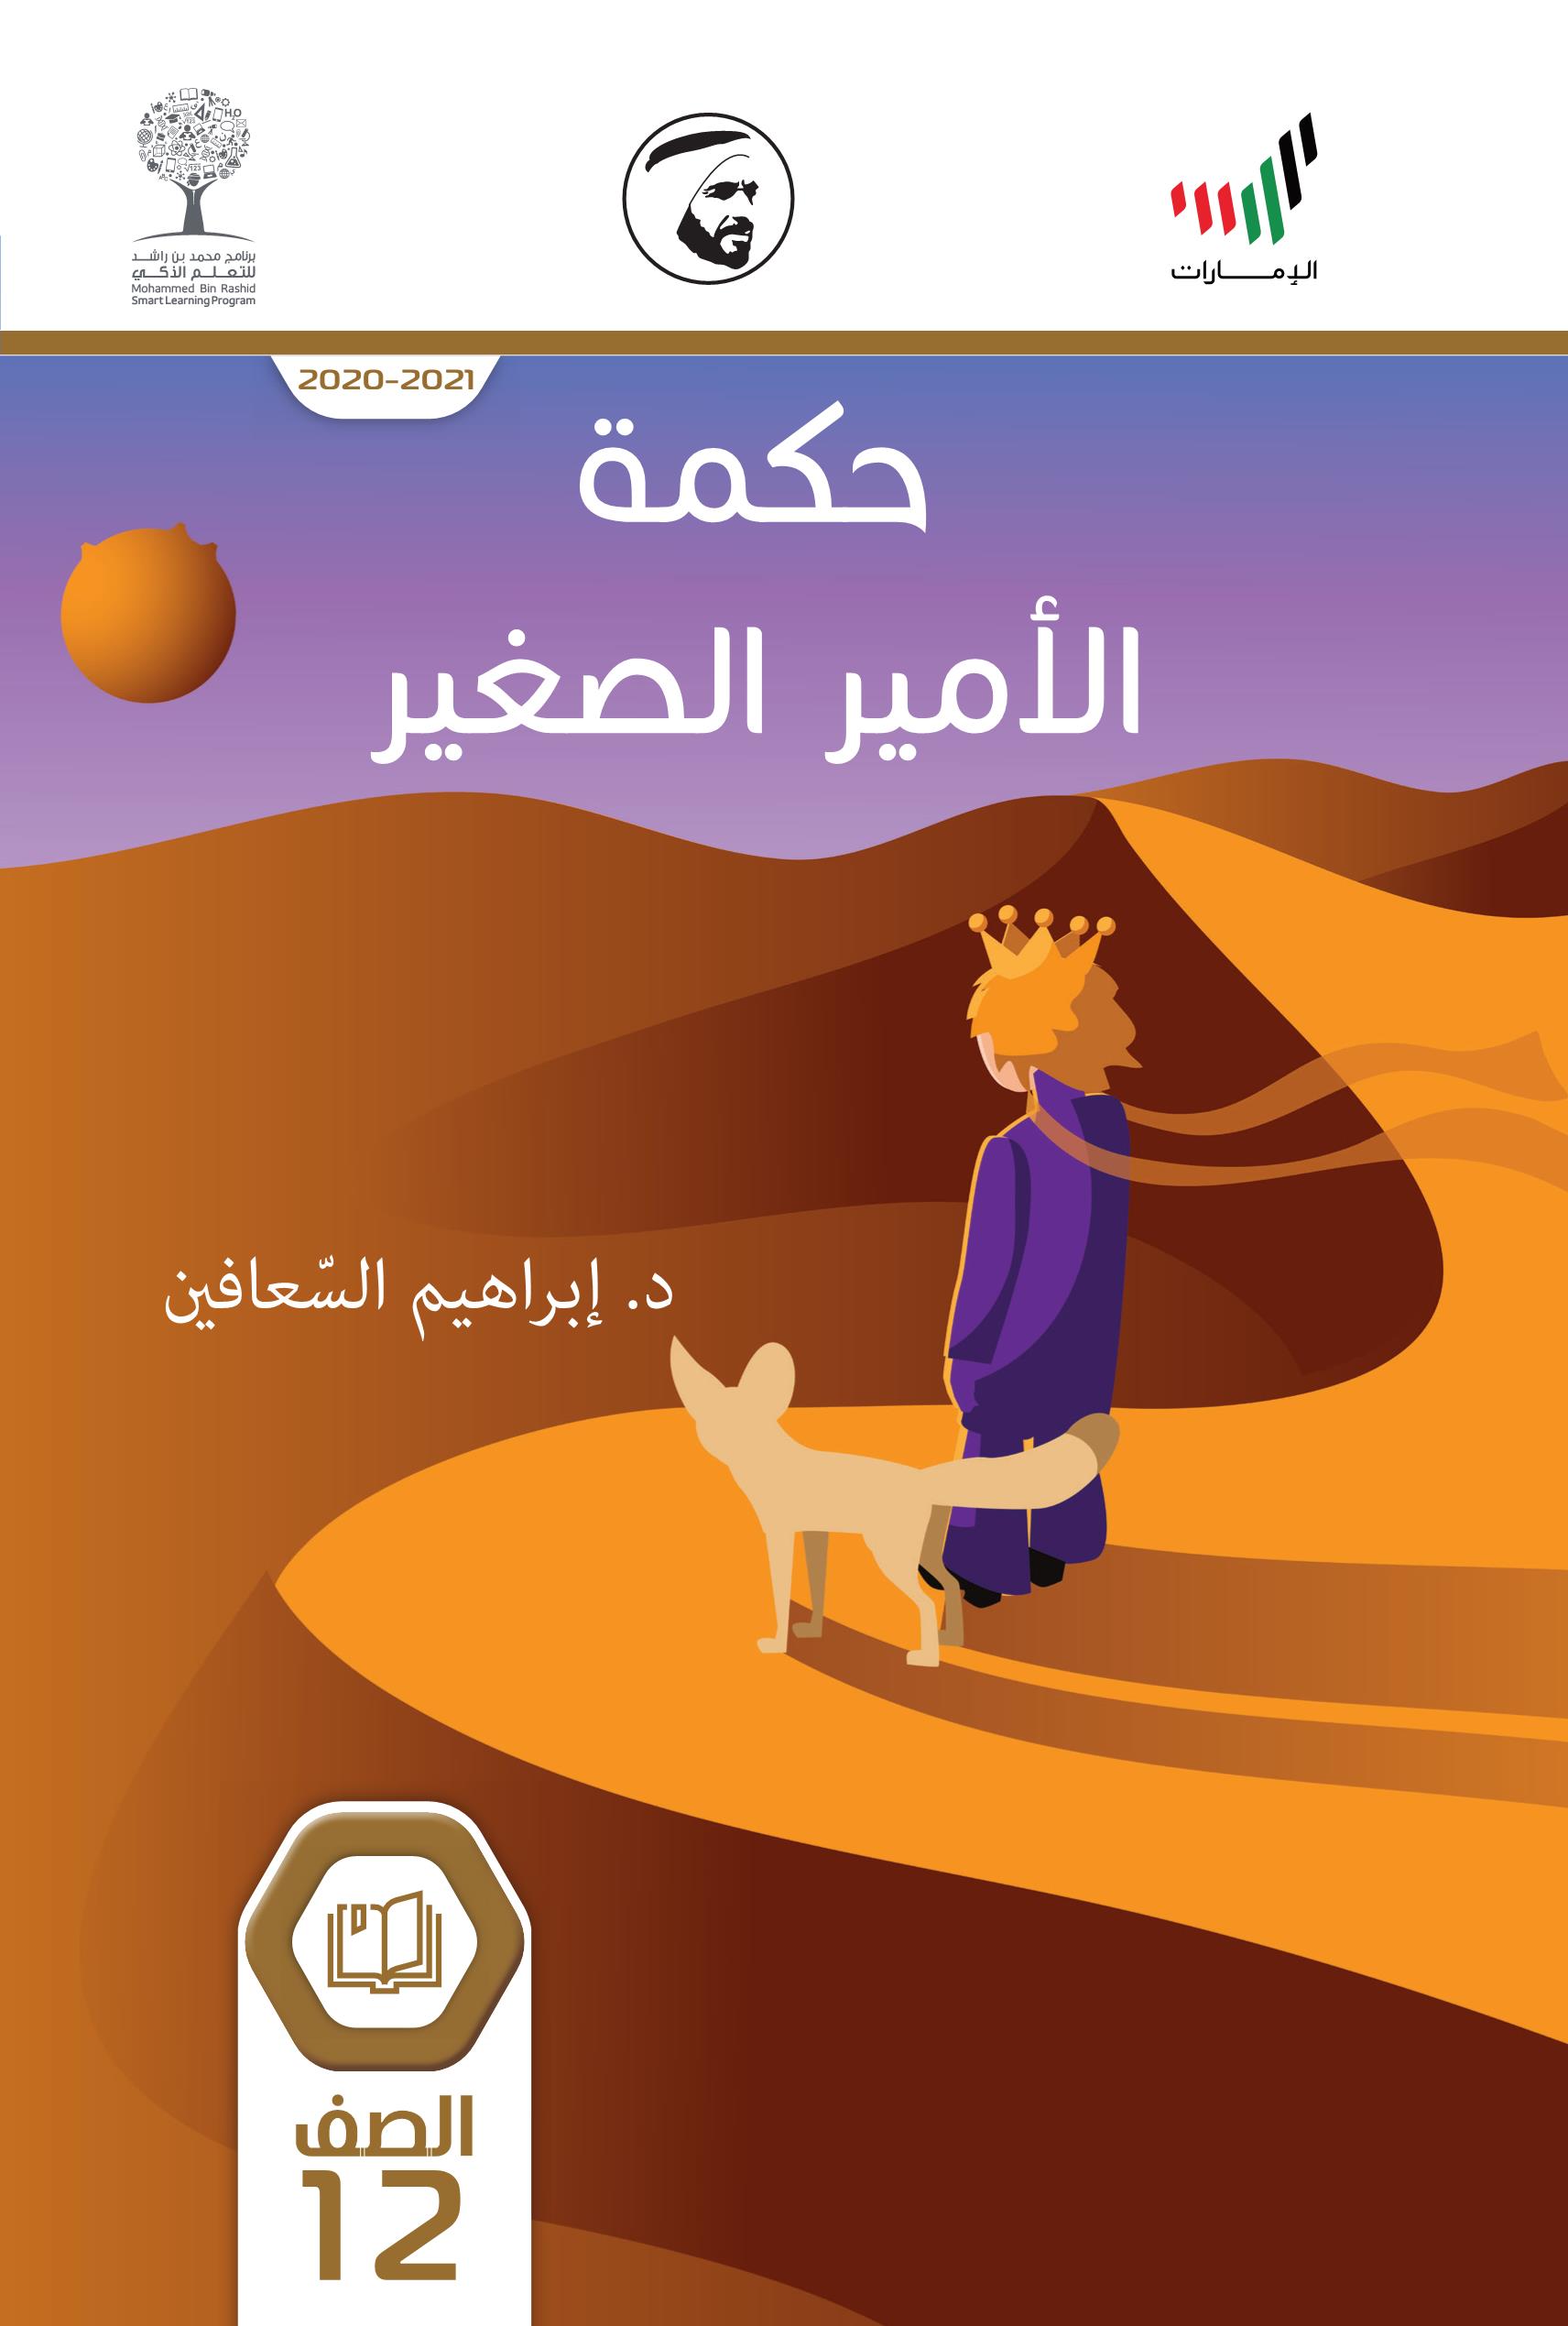 كتاب حكمة الامير الصغير 2020-2021 الصف الثاني عشر مادة اللغة العربية 